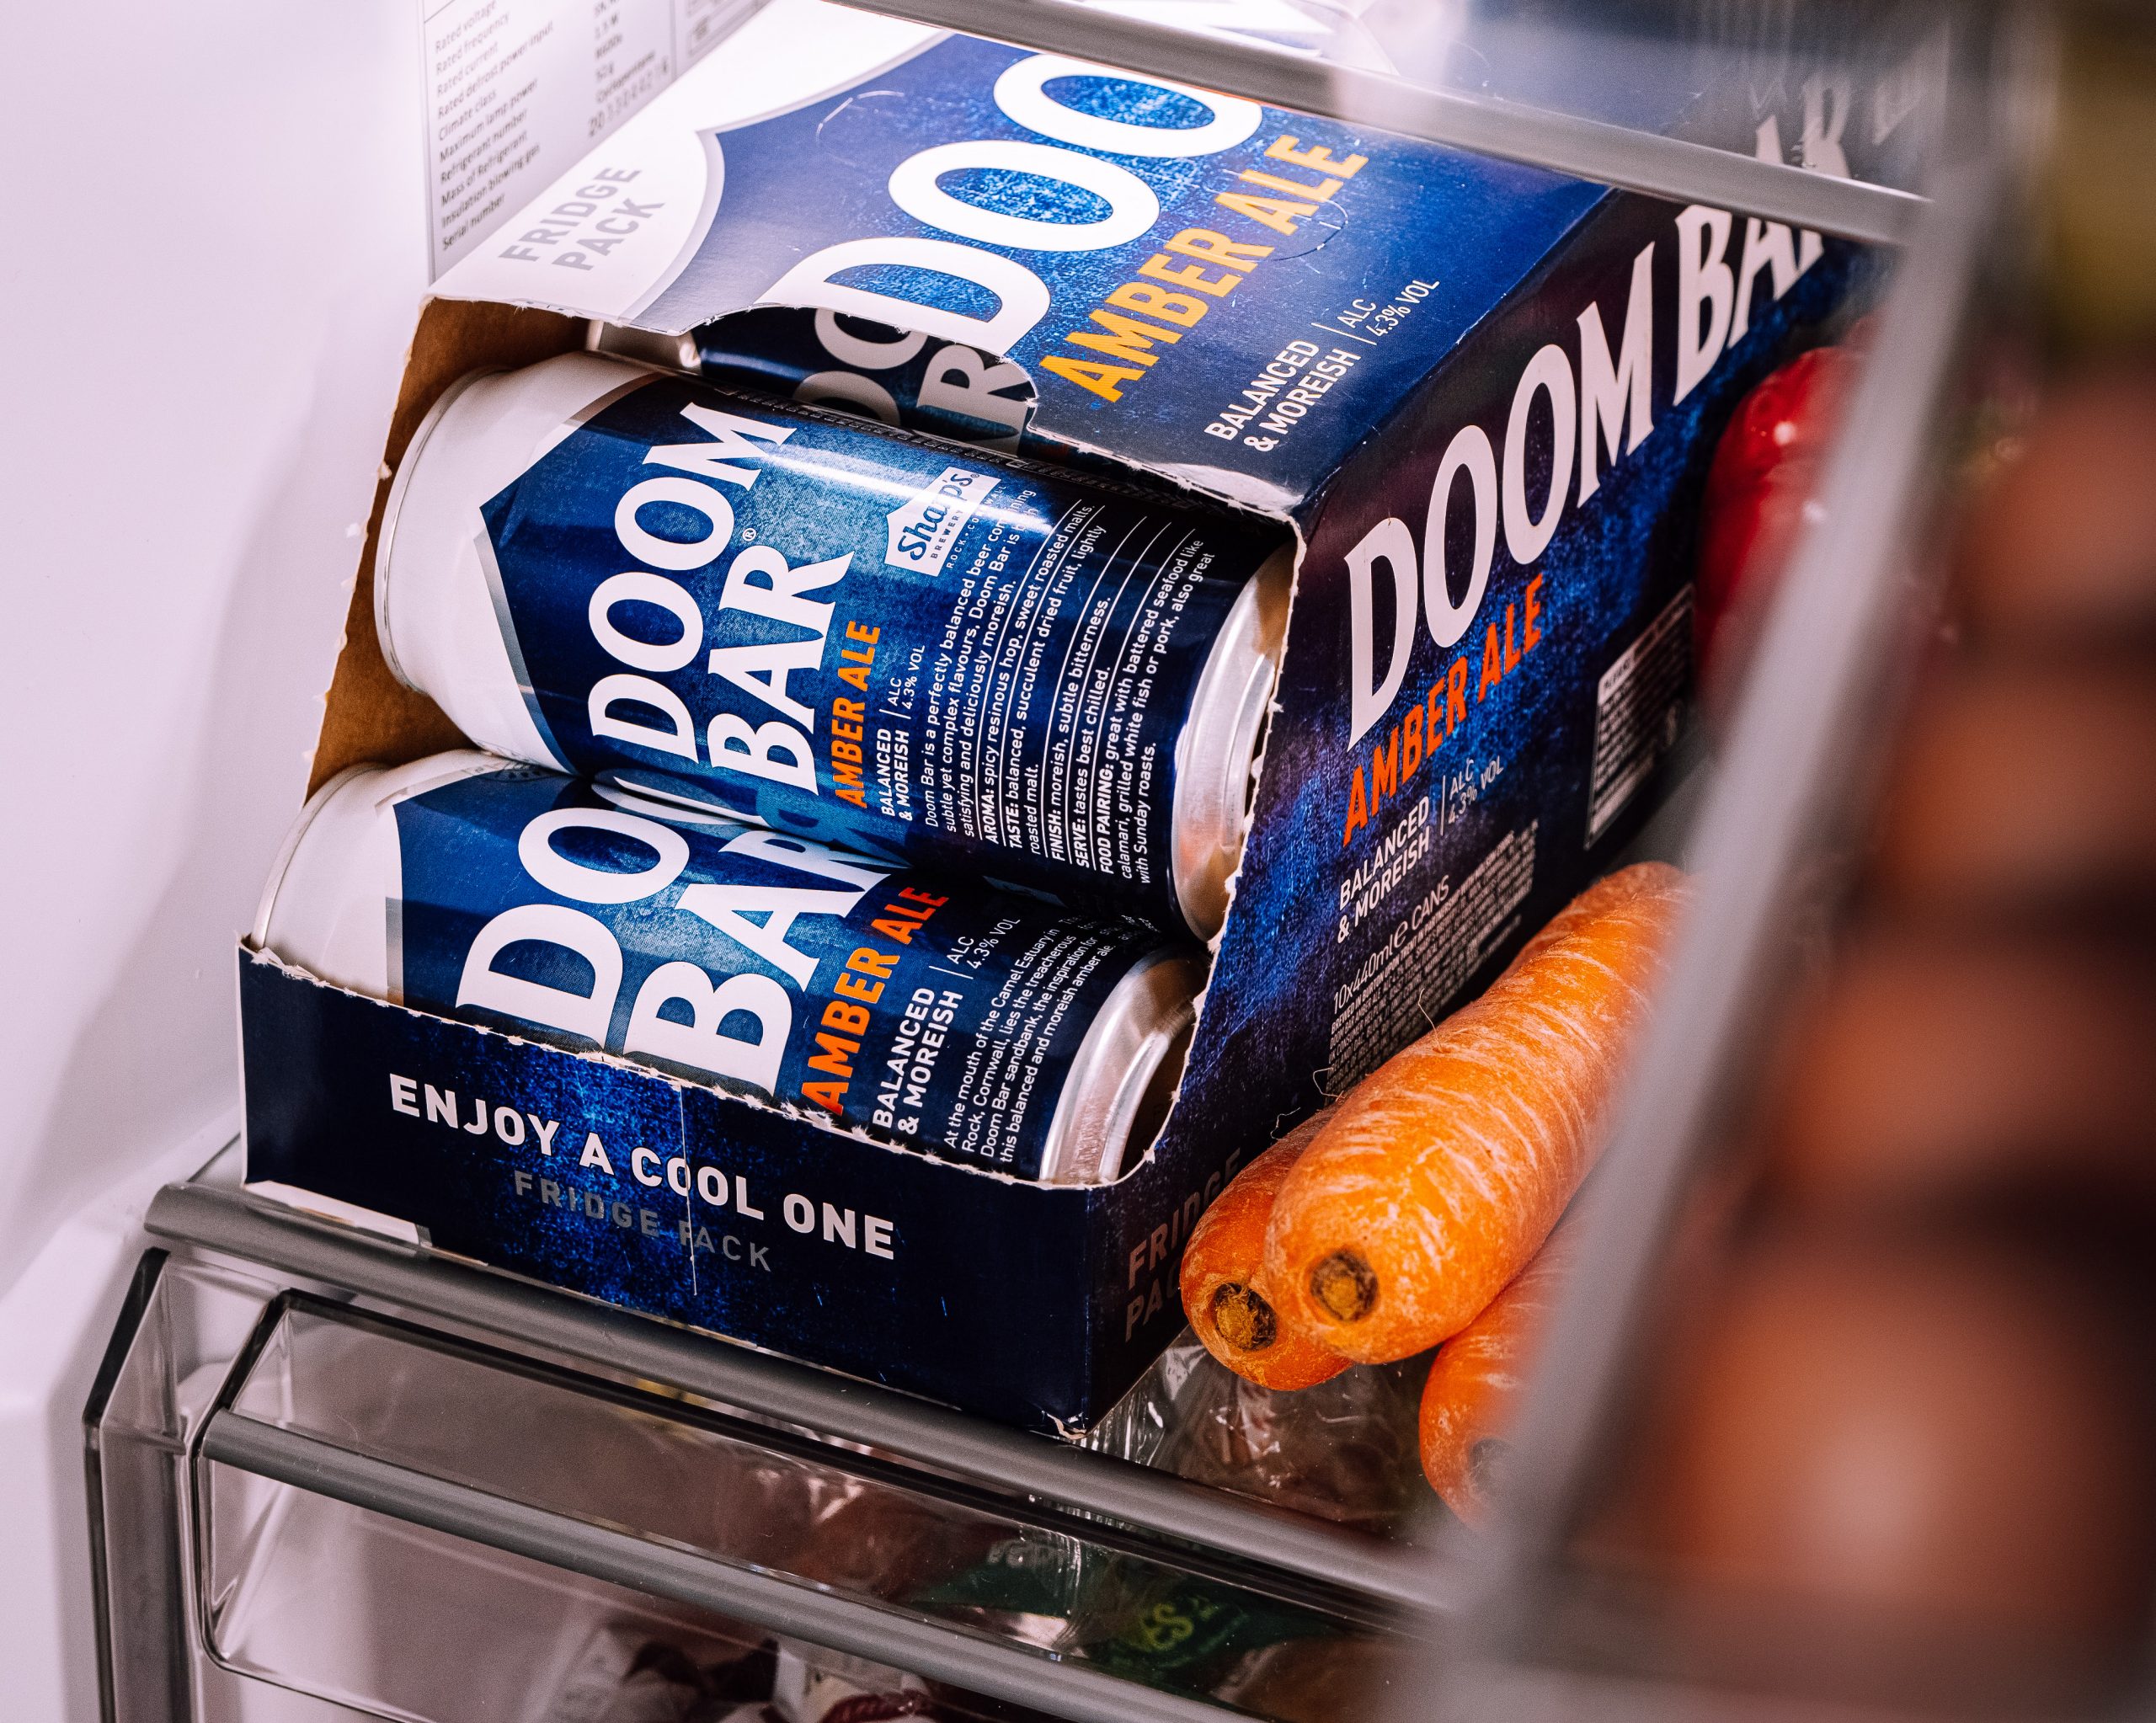 Sharp’s Brewery launches new Doom Bar ‘fridge pack’